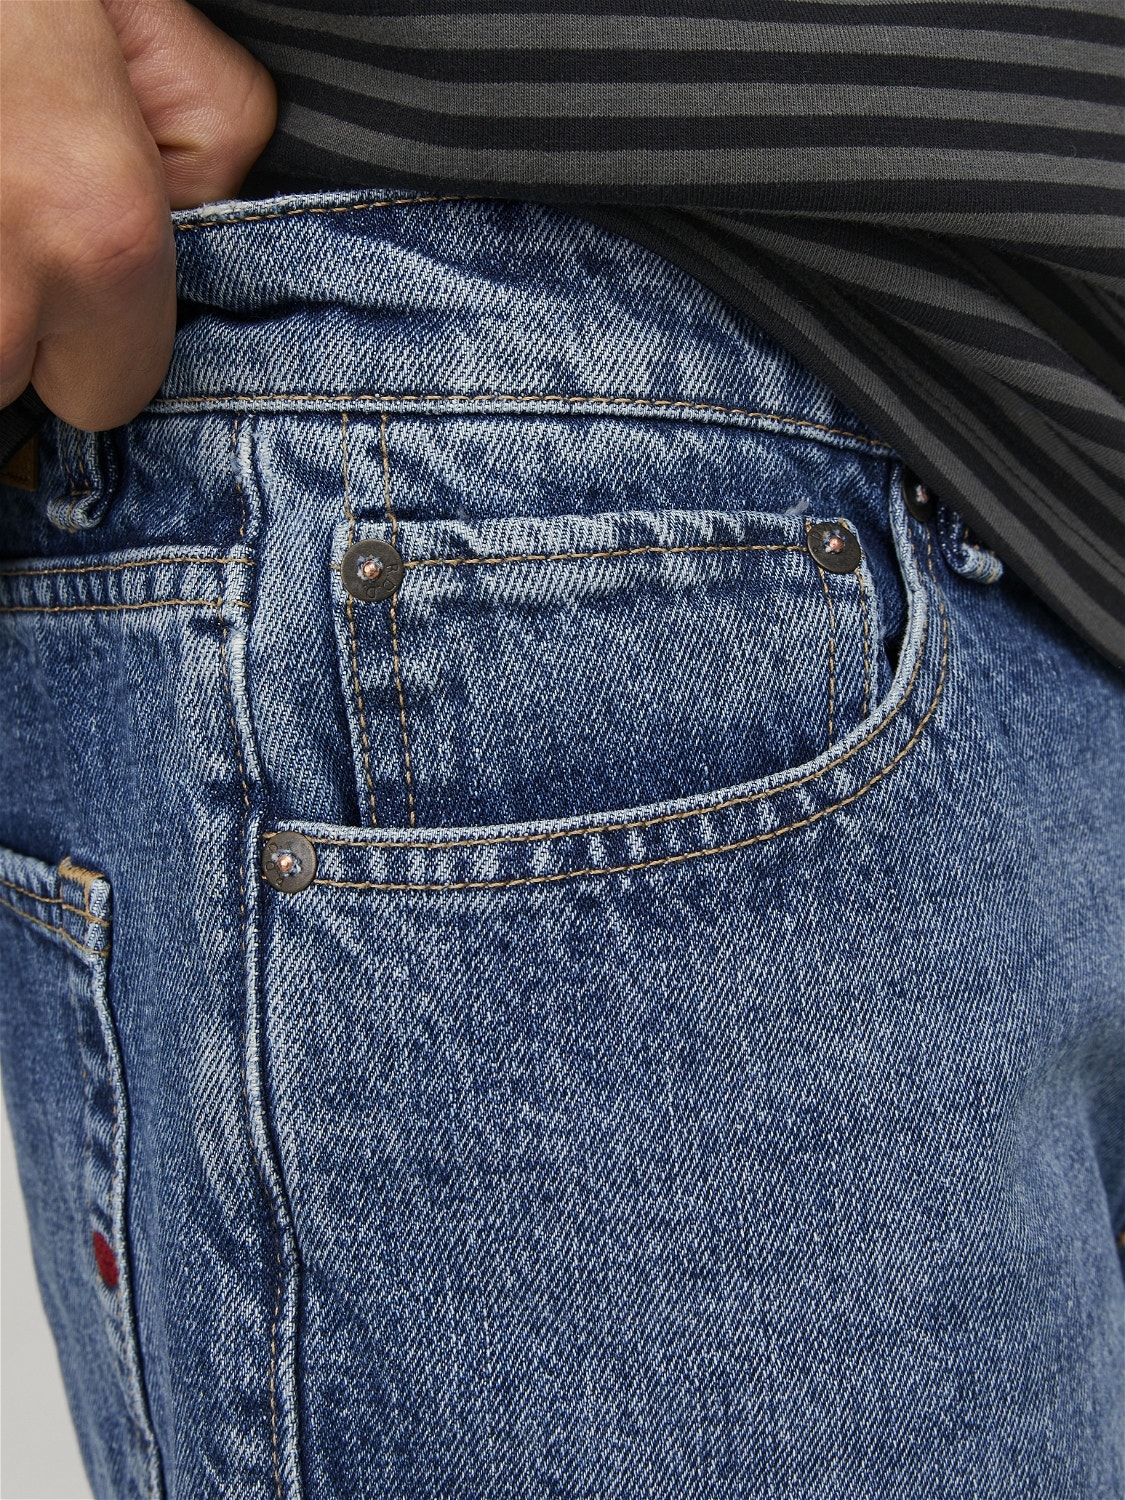 Jack & Jones RDD Loose Fit Jeans Shorts -Blue Denim - 12252362